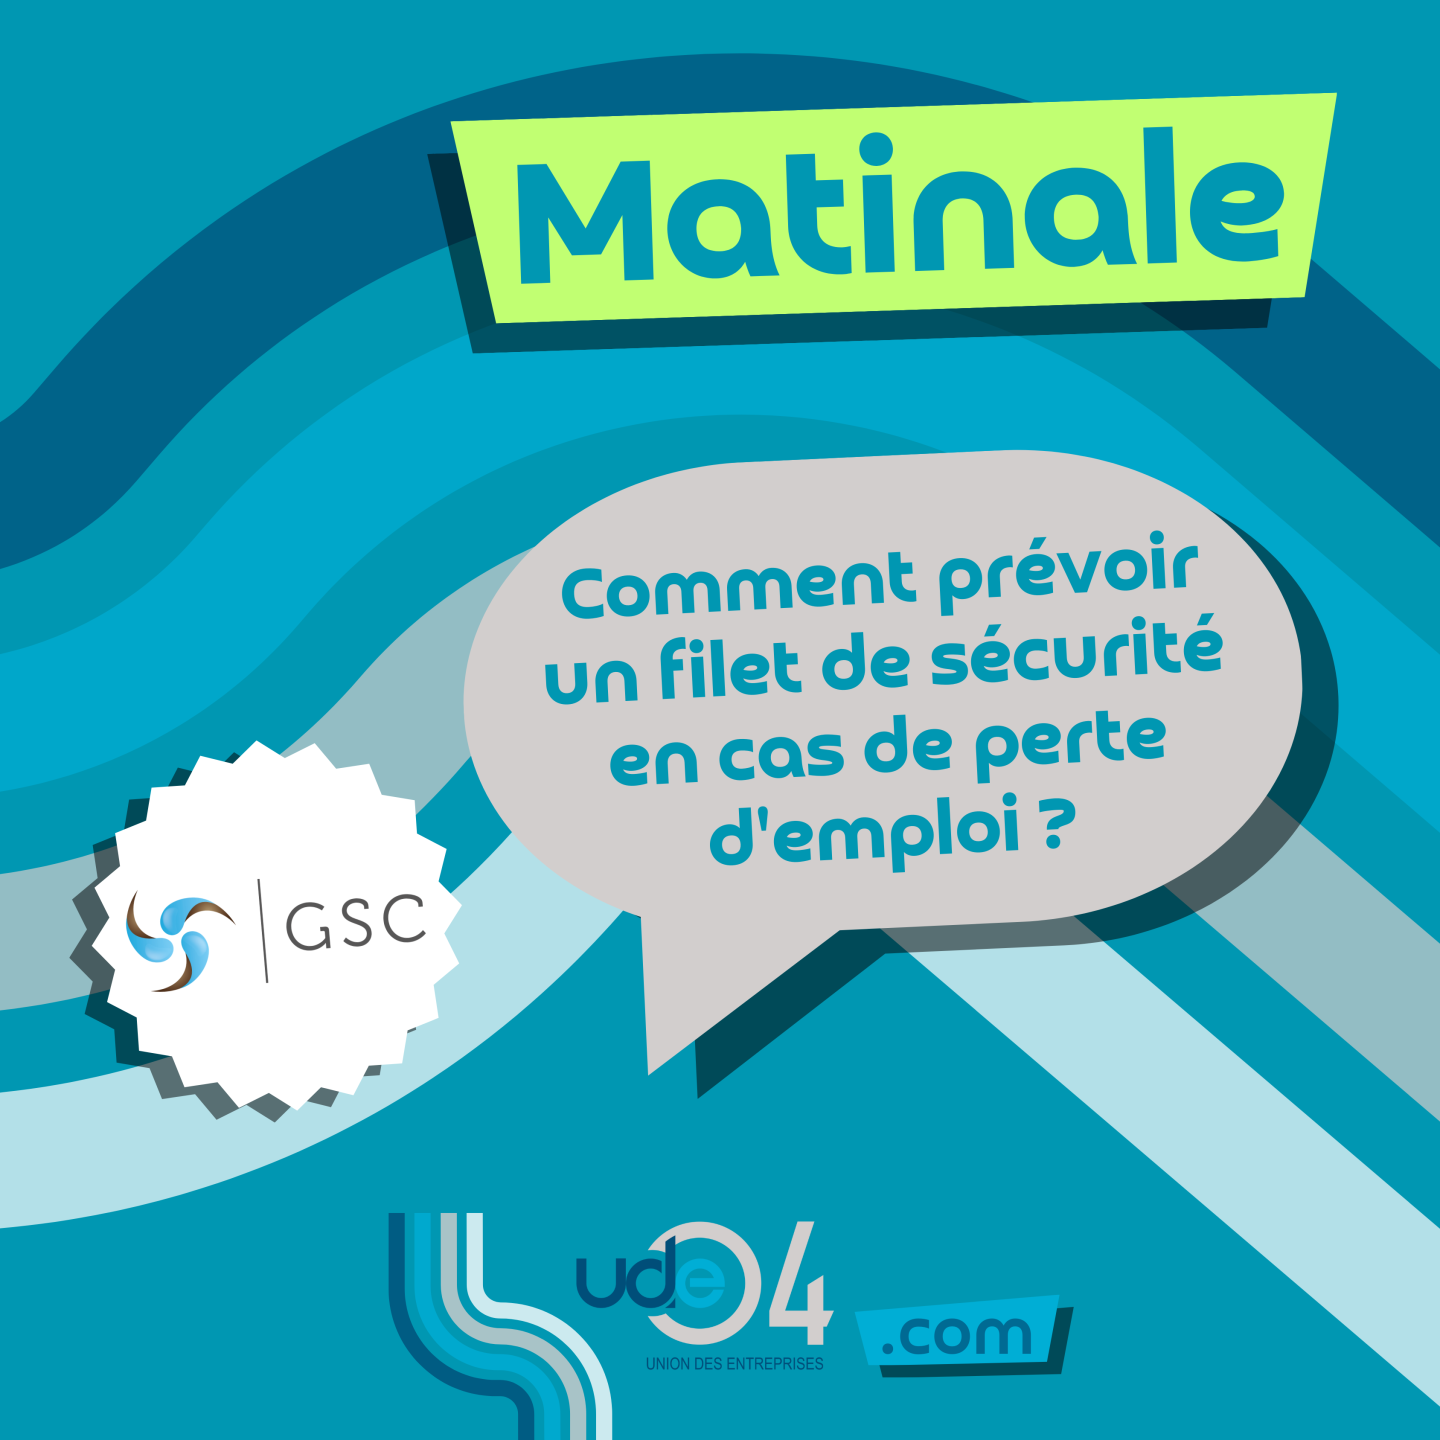 Visuel information Site web Mailing (Publication Instagram (Carré)) (39)